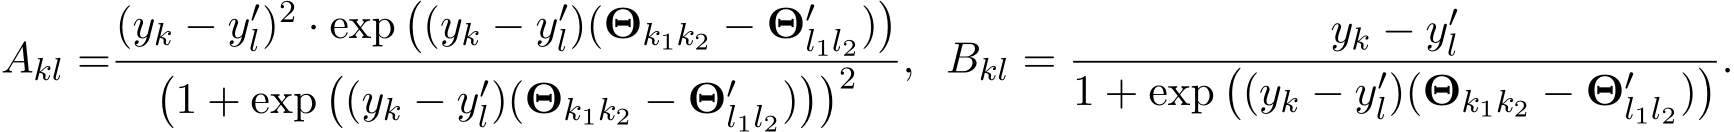 Akl =(yk − y′l)2 · exp�(yk − y′l)(Θk1k2 − Θ′l1l2)��1 + exp�(yk − y′l)(Θk1k2 − Θ′l1l2)��2 , Bkl = yk − y′l1 + exp�(yk − y′l)(Θk1k2 − Θ′l1l2)�.